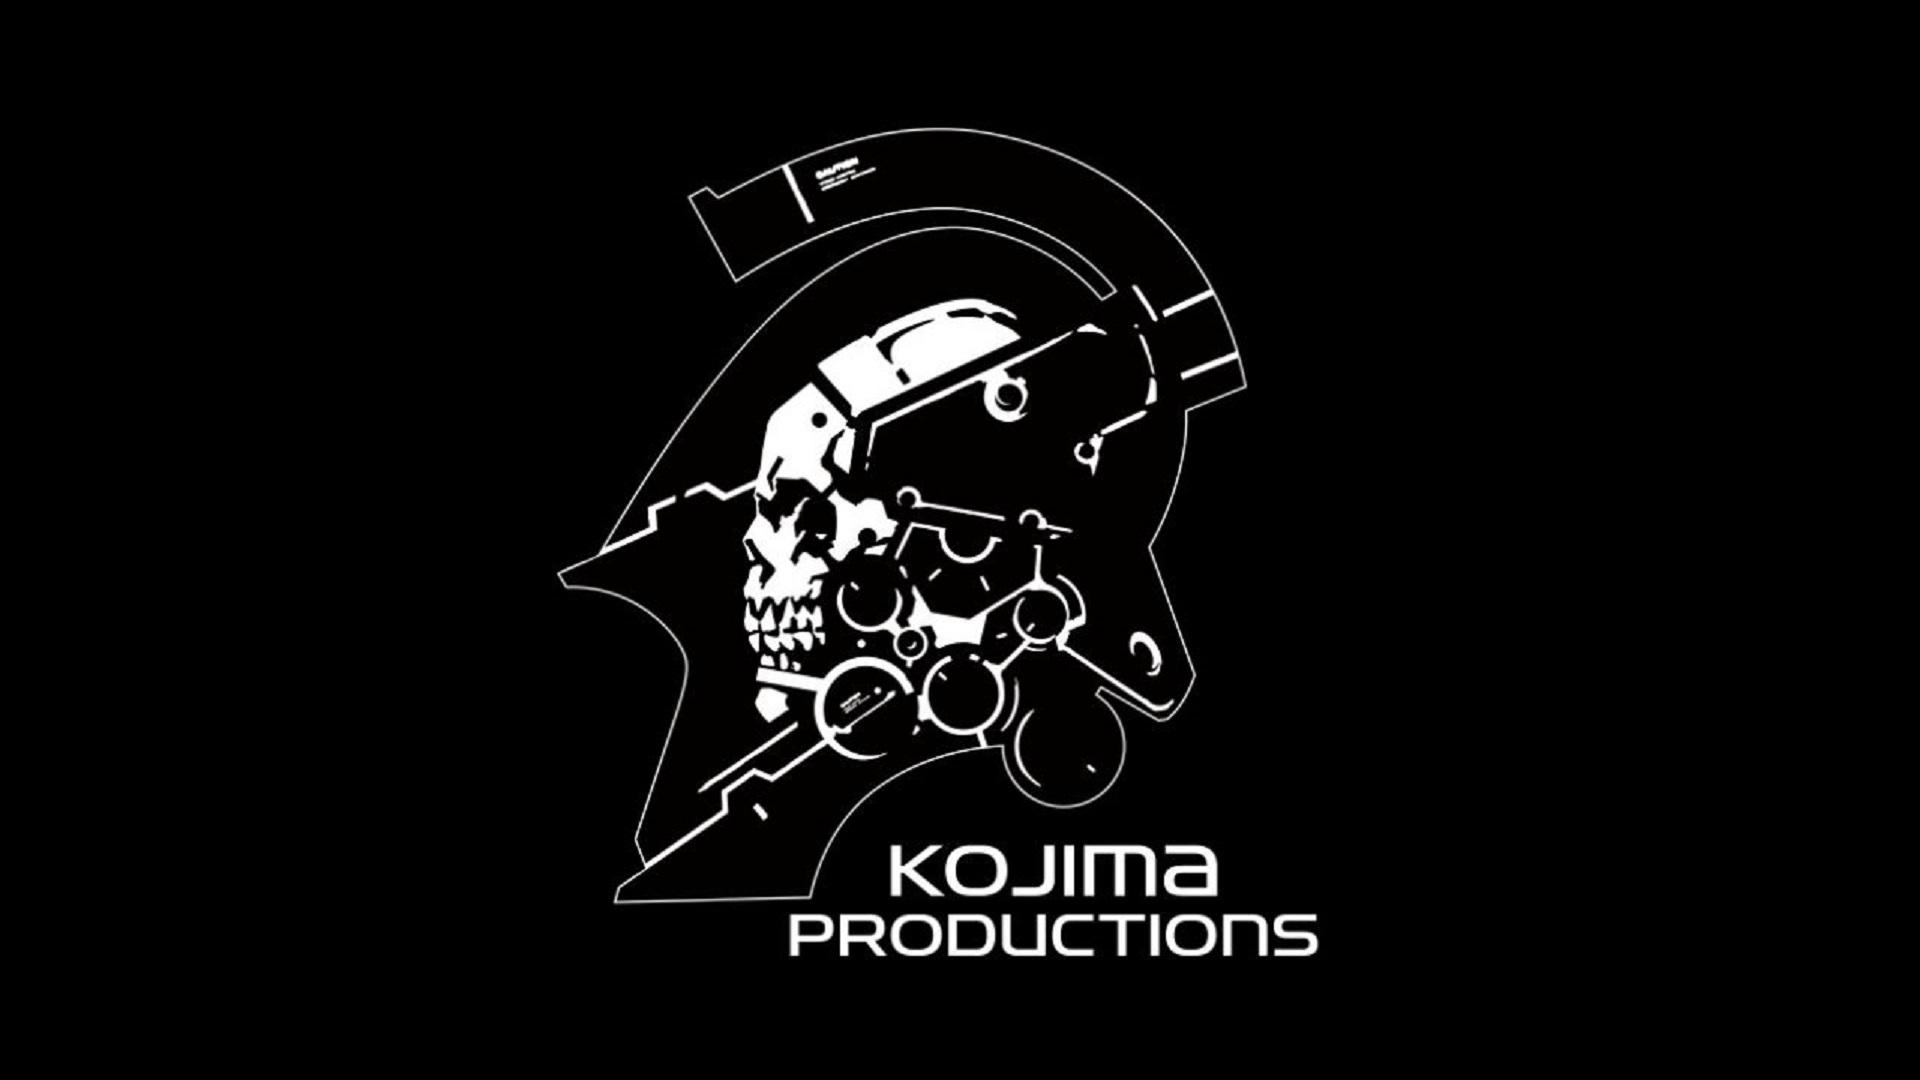 Game mới của Hideo Kojima sẽ ra mắt trên PS4, sau đó là PC